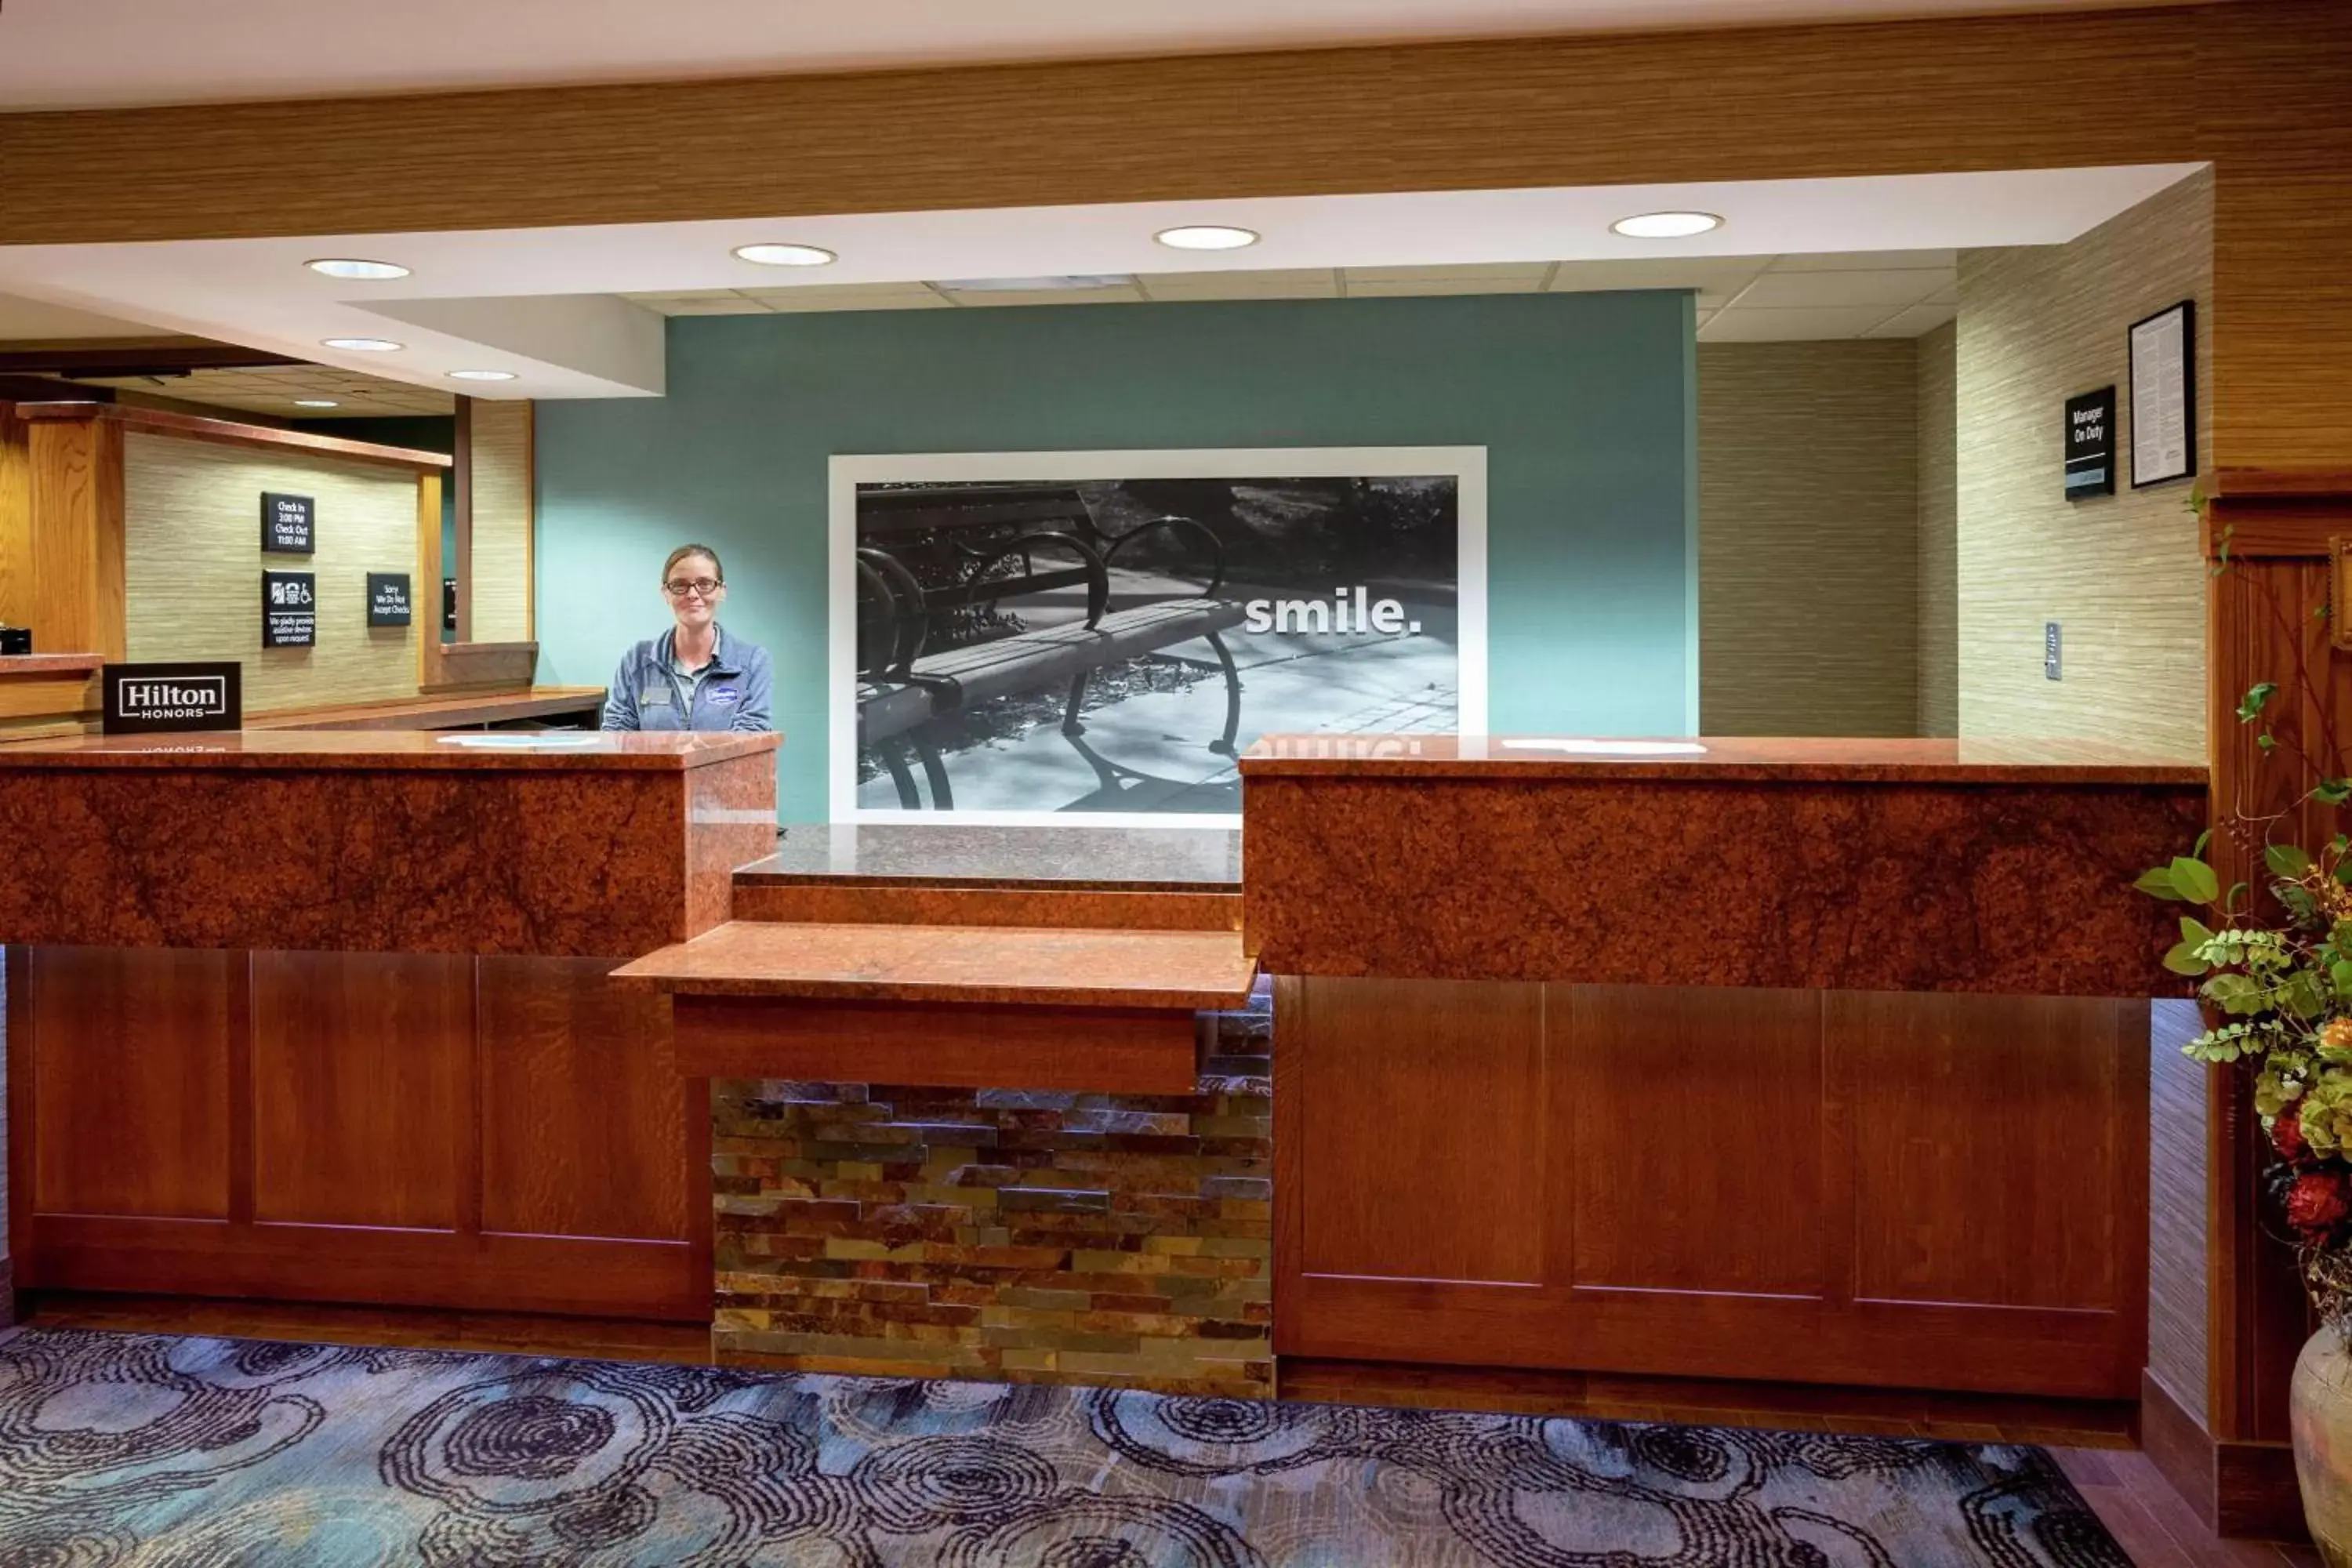 Lobby or reception, Lobby/Reception in Hampton Inn Duluth-Canal Park